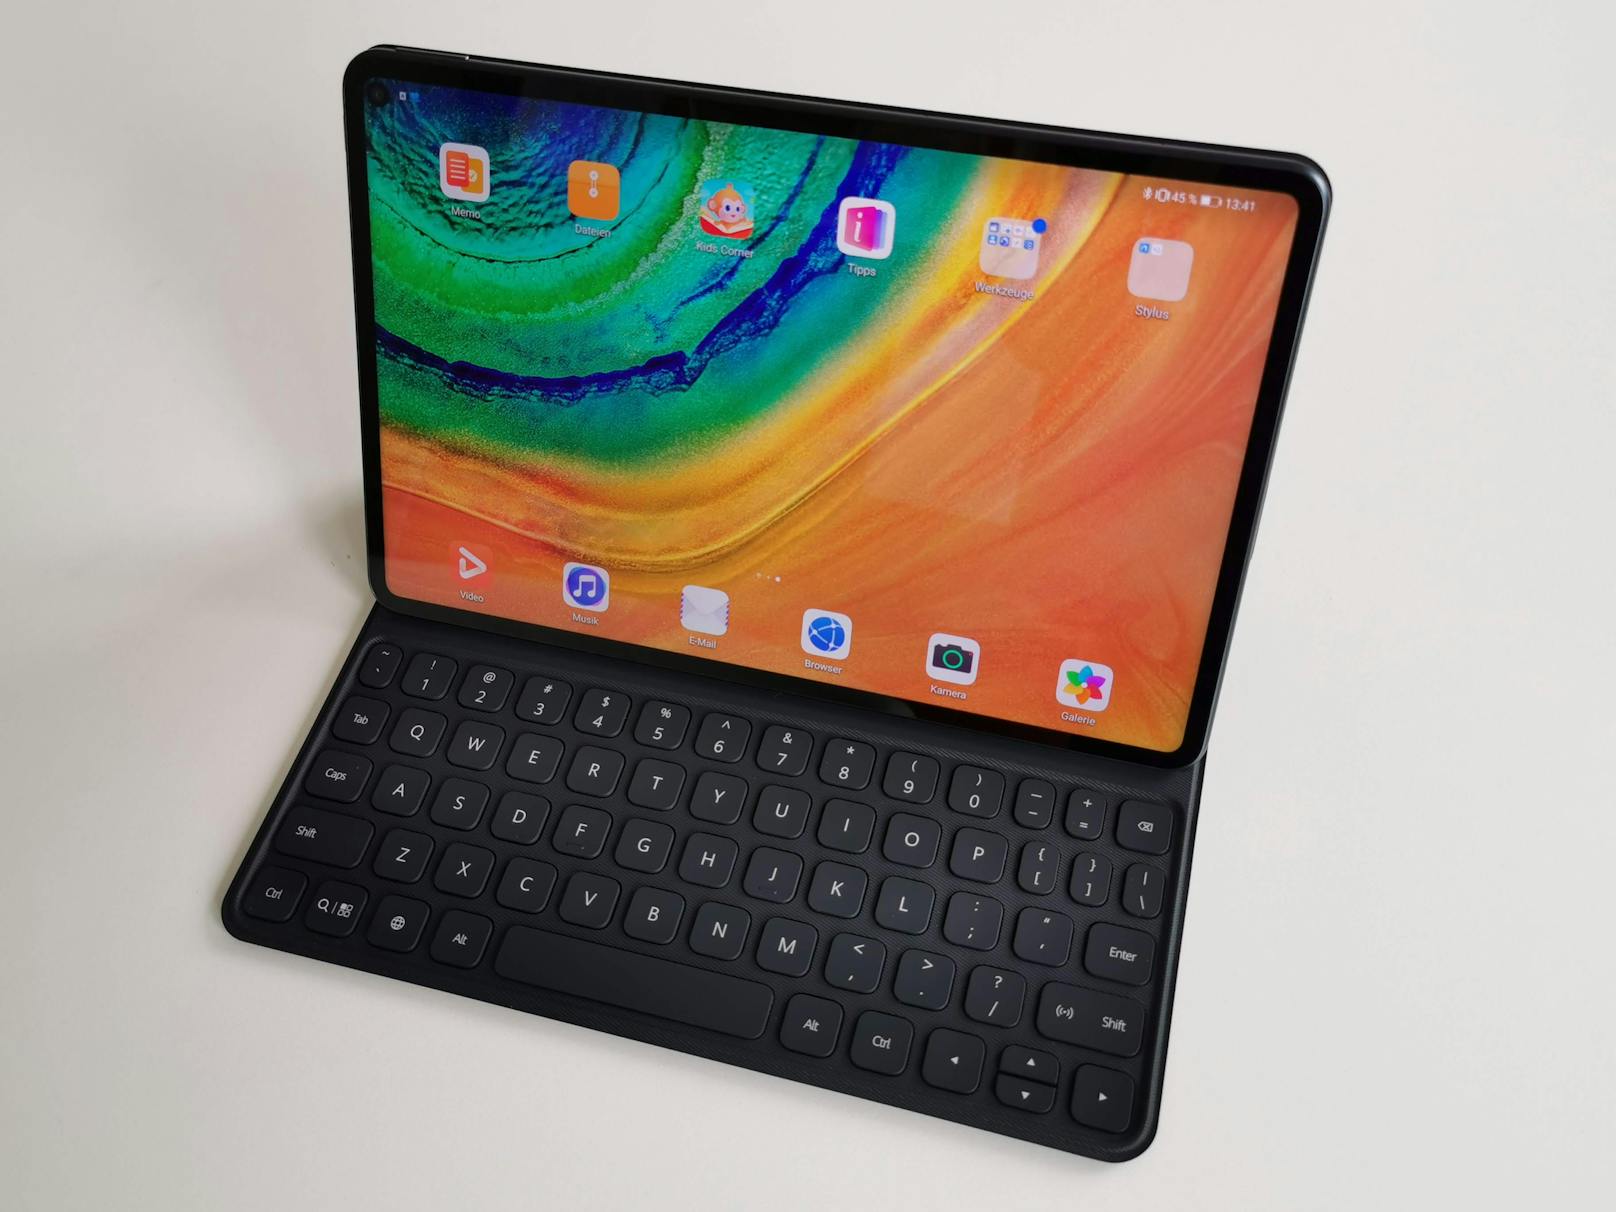 ...denn das neue Tablet hat nicht nur jede Menge Power, sondern bietet mit dem M-Pencil und dem Tastatur-Cover eine interessante Alternative zu klassischen Laptops.